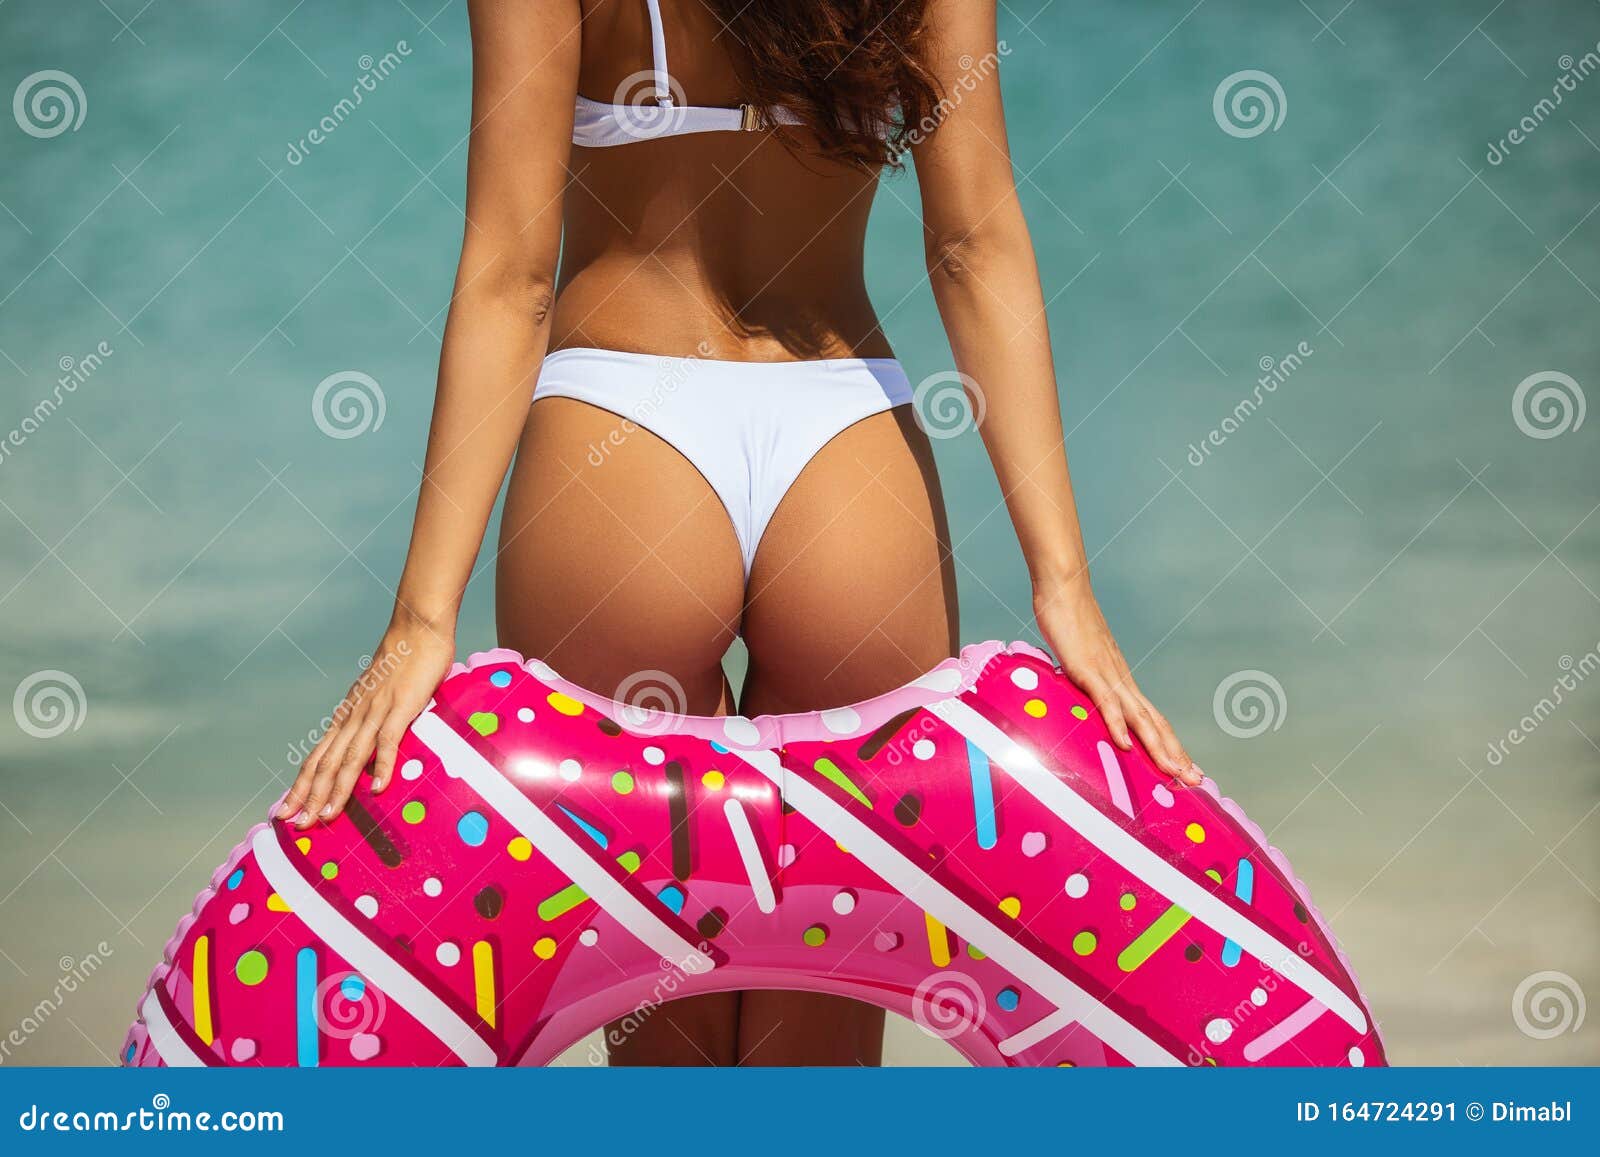 Mujer Espalda Bikini Fotos de stock Fotos libres de regalías de Dreamstime